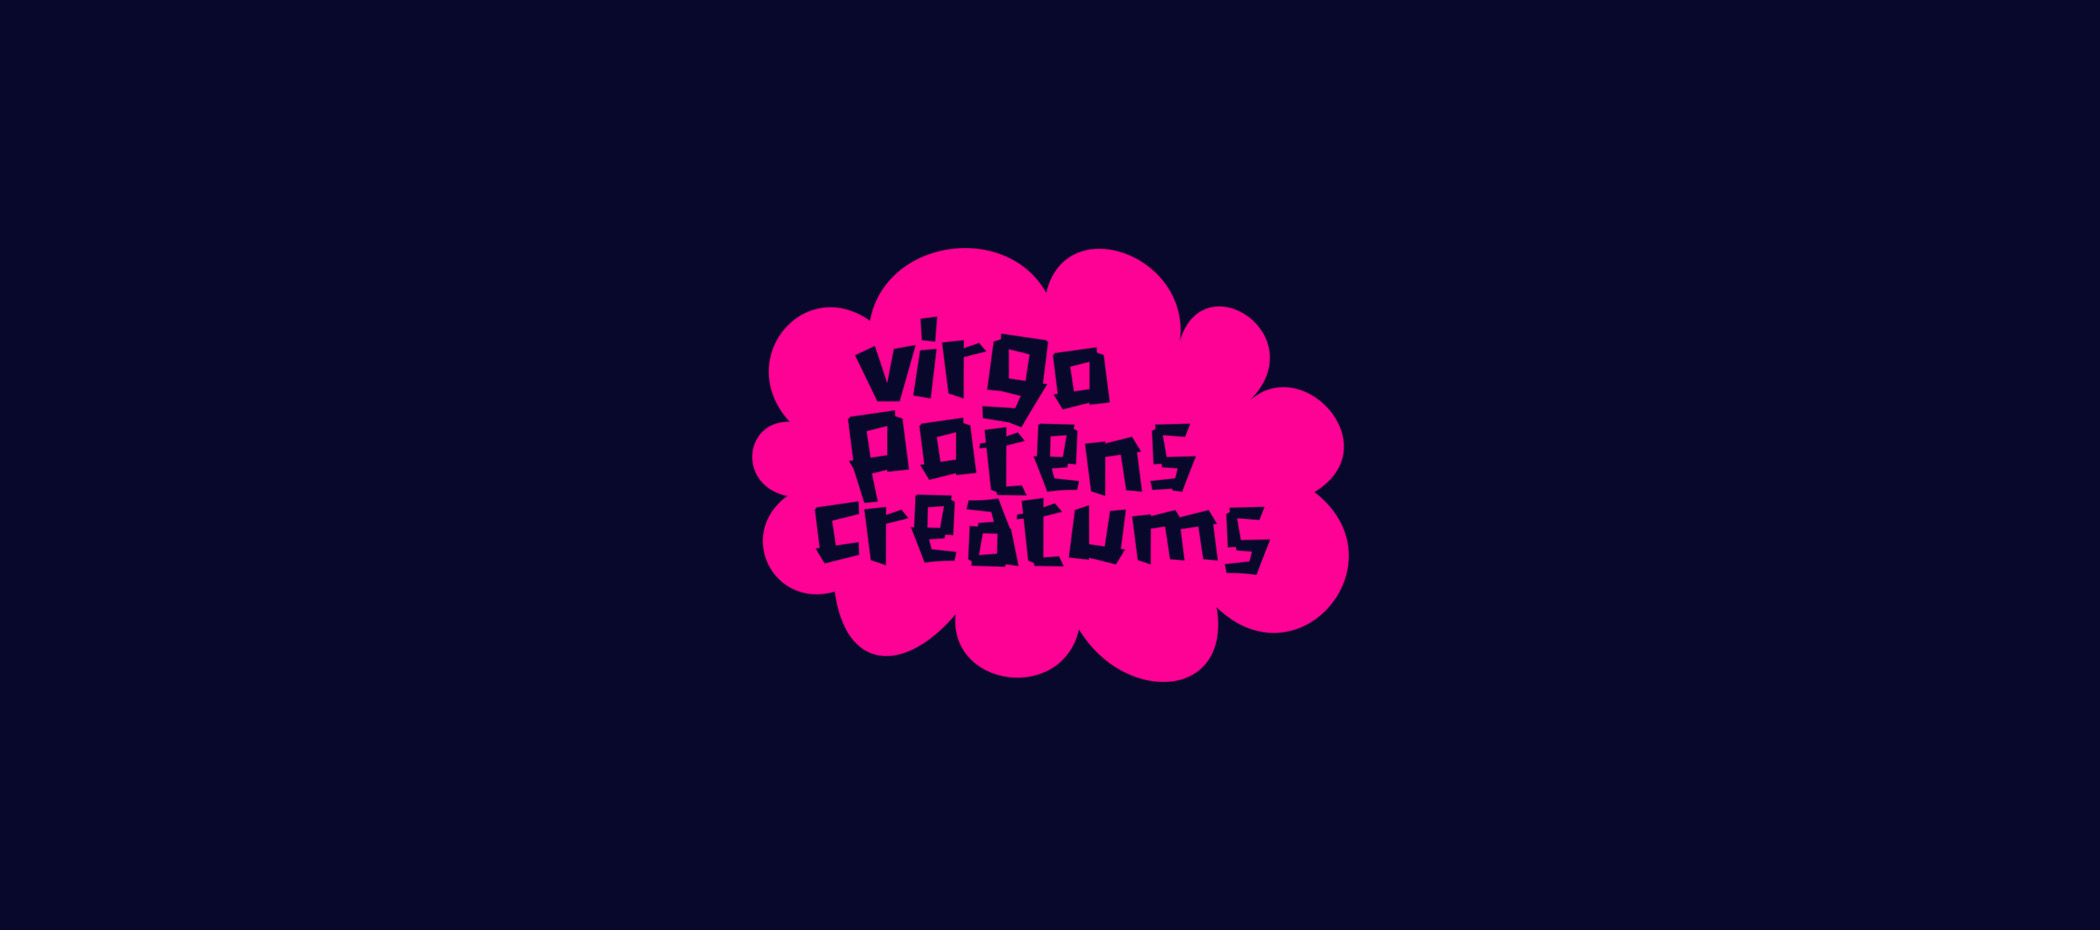 diseño logotipo - Beusual - diseño grafico santander - virgo potens creatums